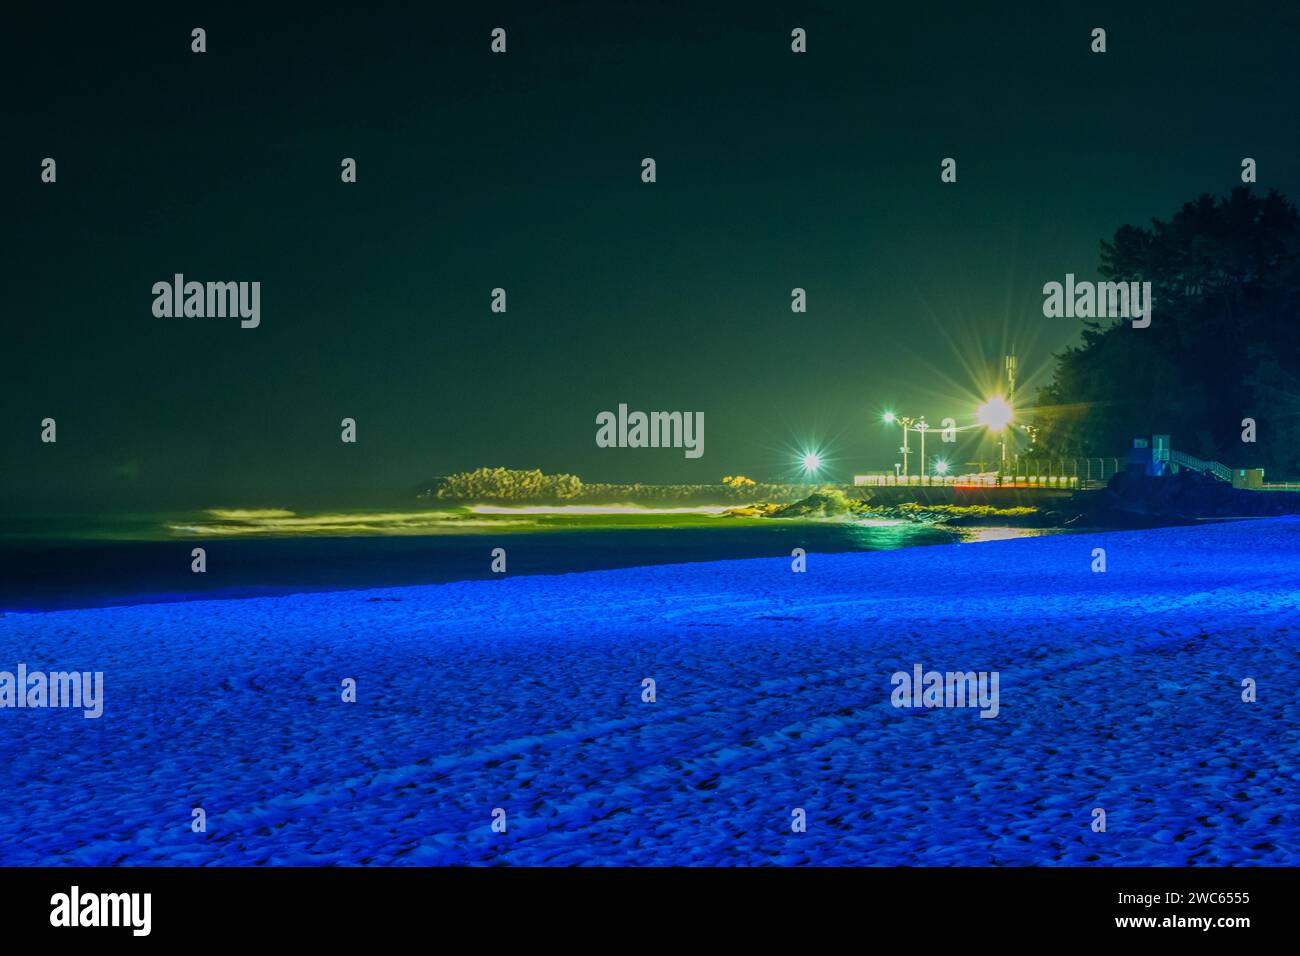 Scène de nuit à la plage lumière bleue douce avec jetée éclairée par des lampadaires en arrière-plan Banque D'Images